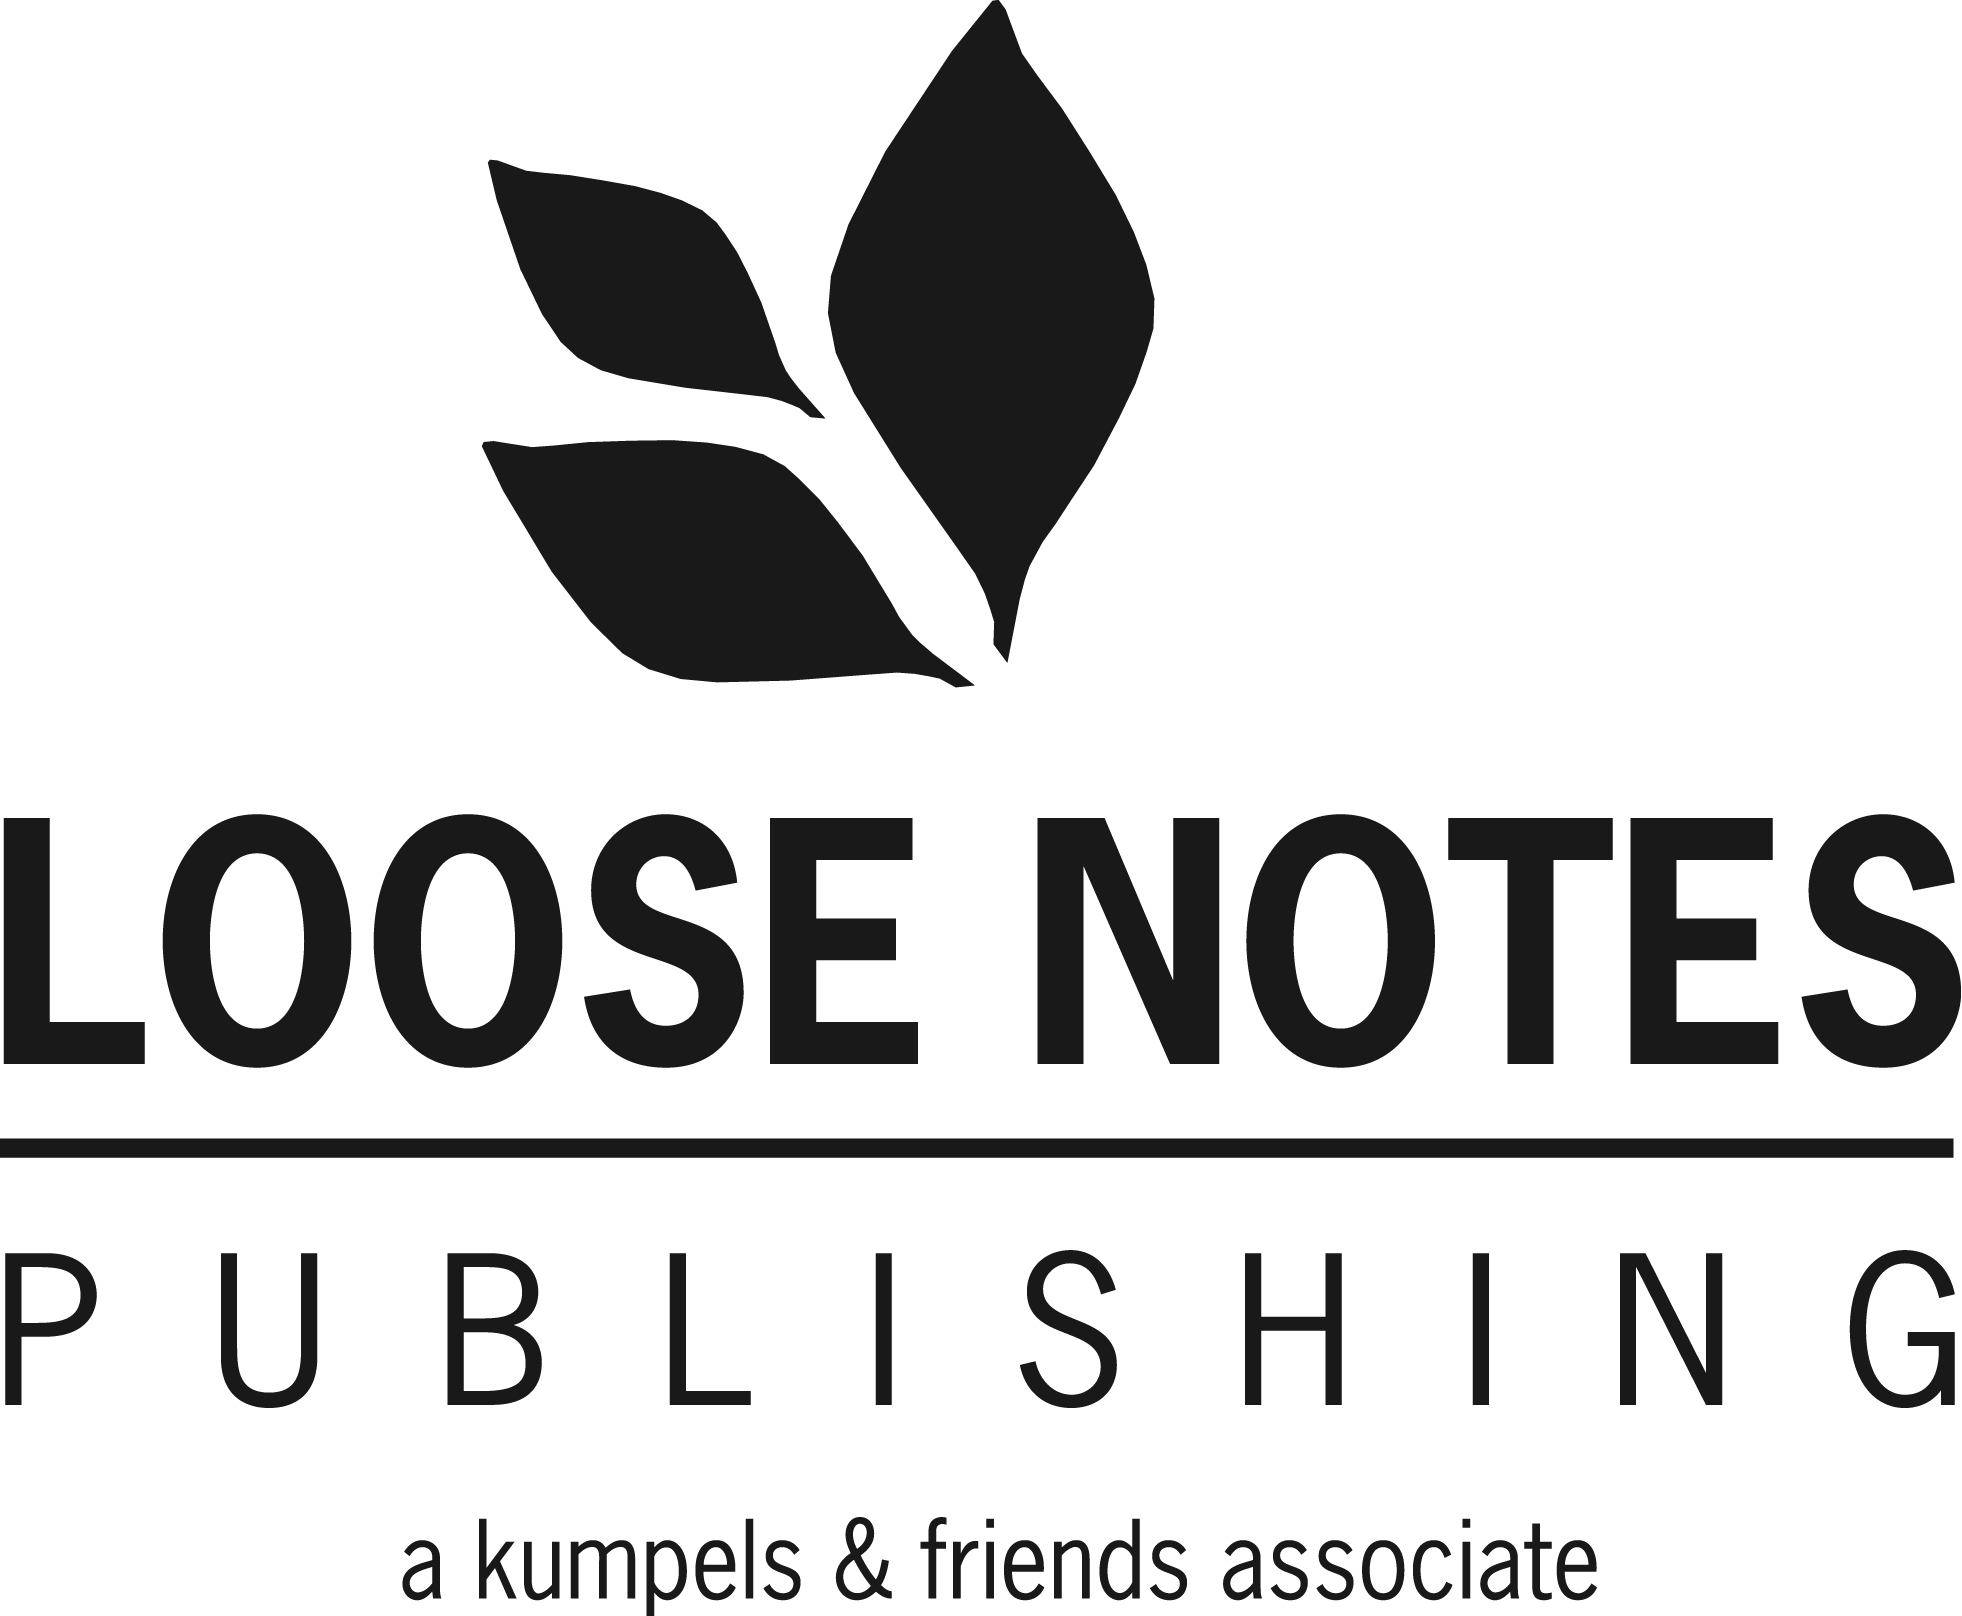 Loose Notes Publishing